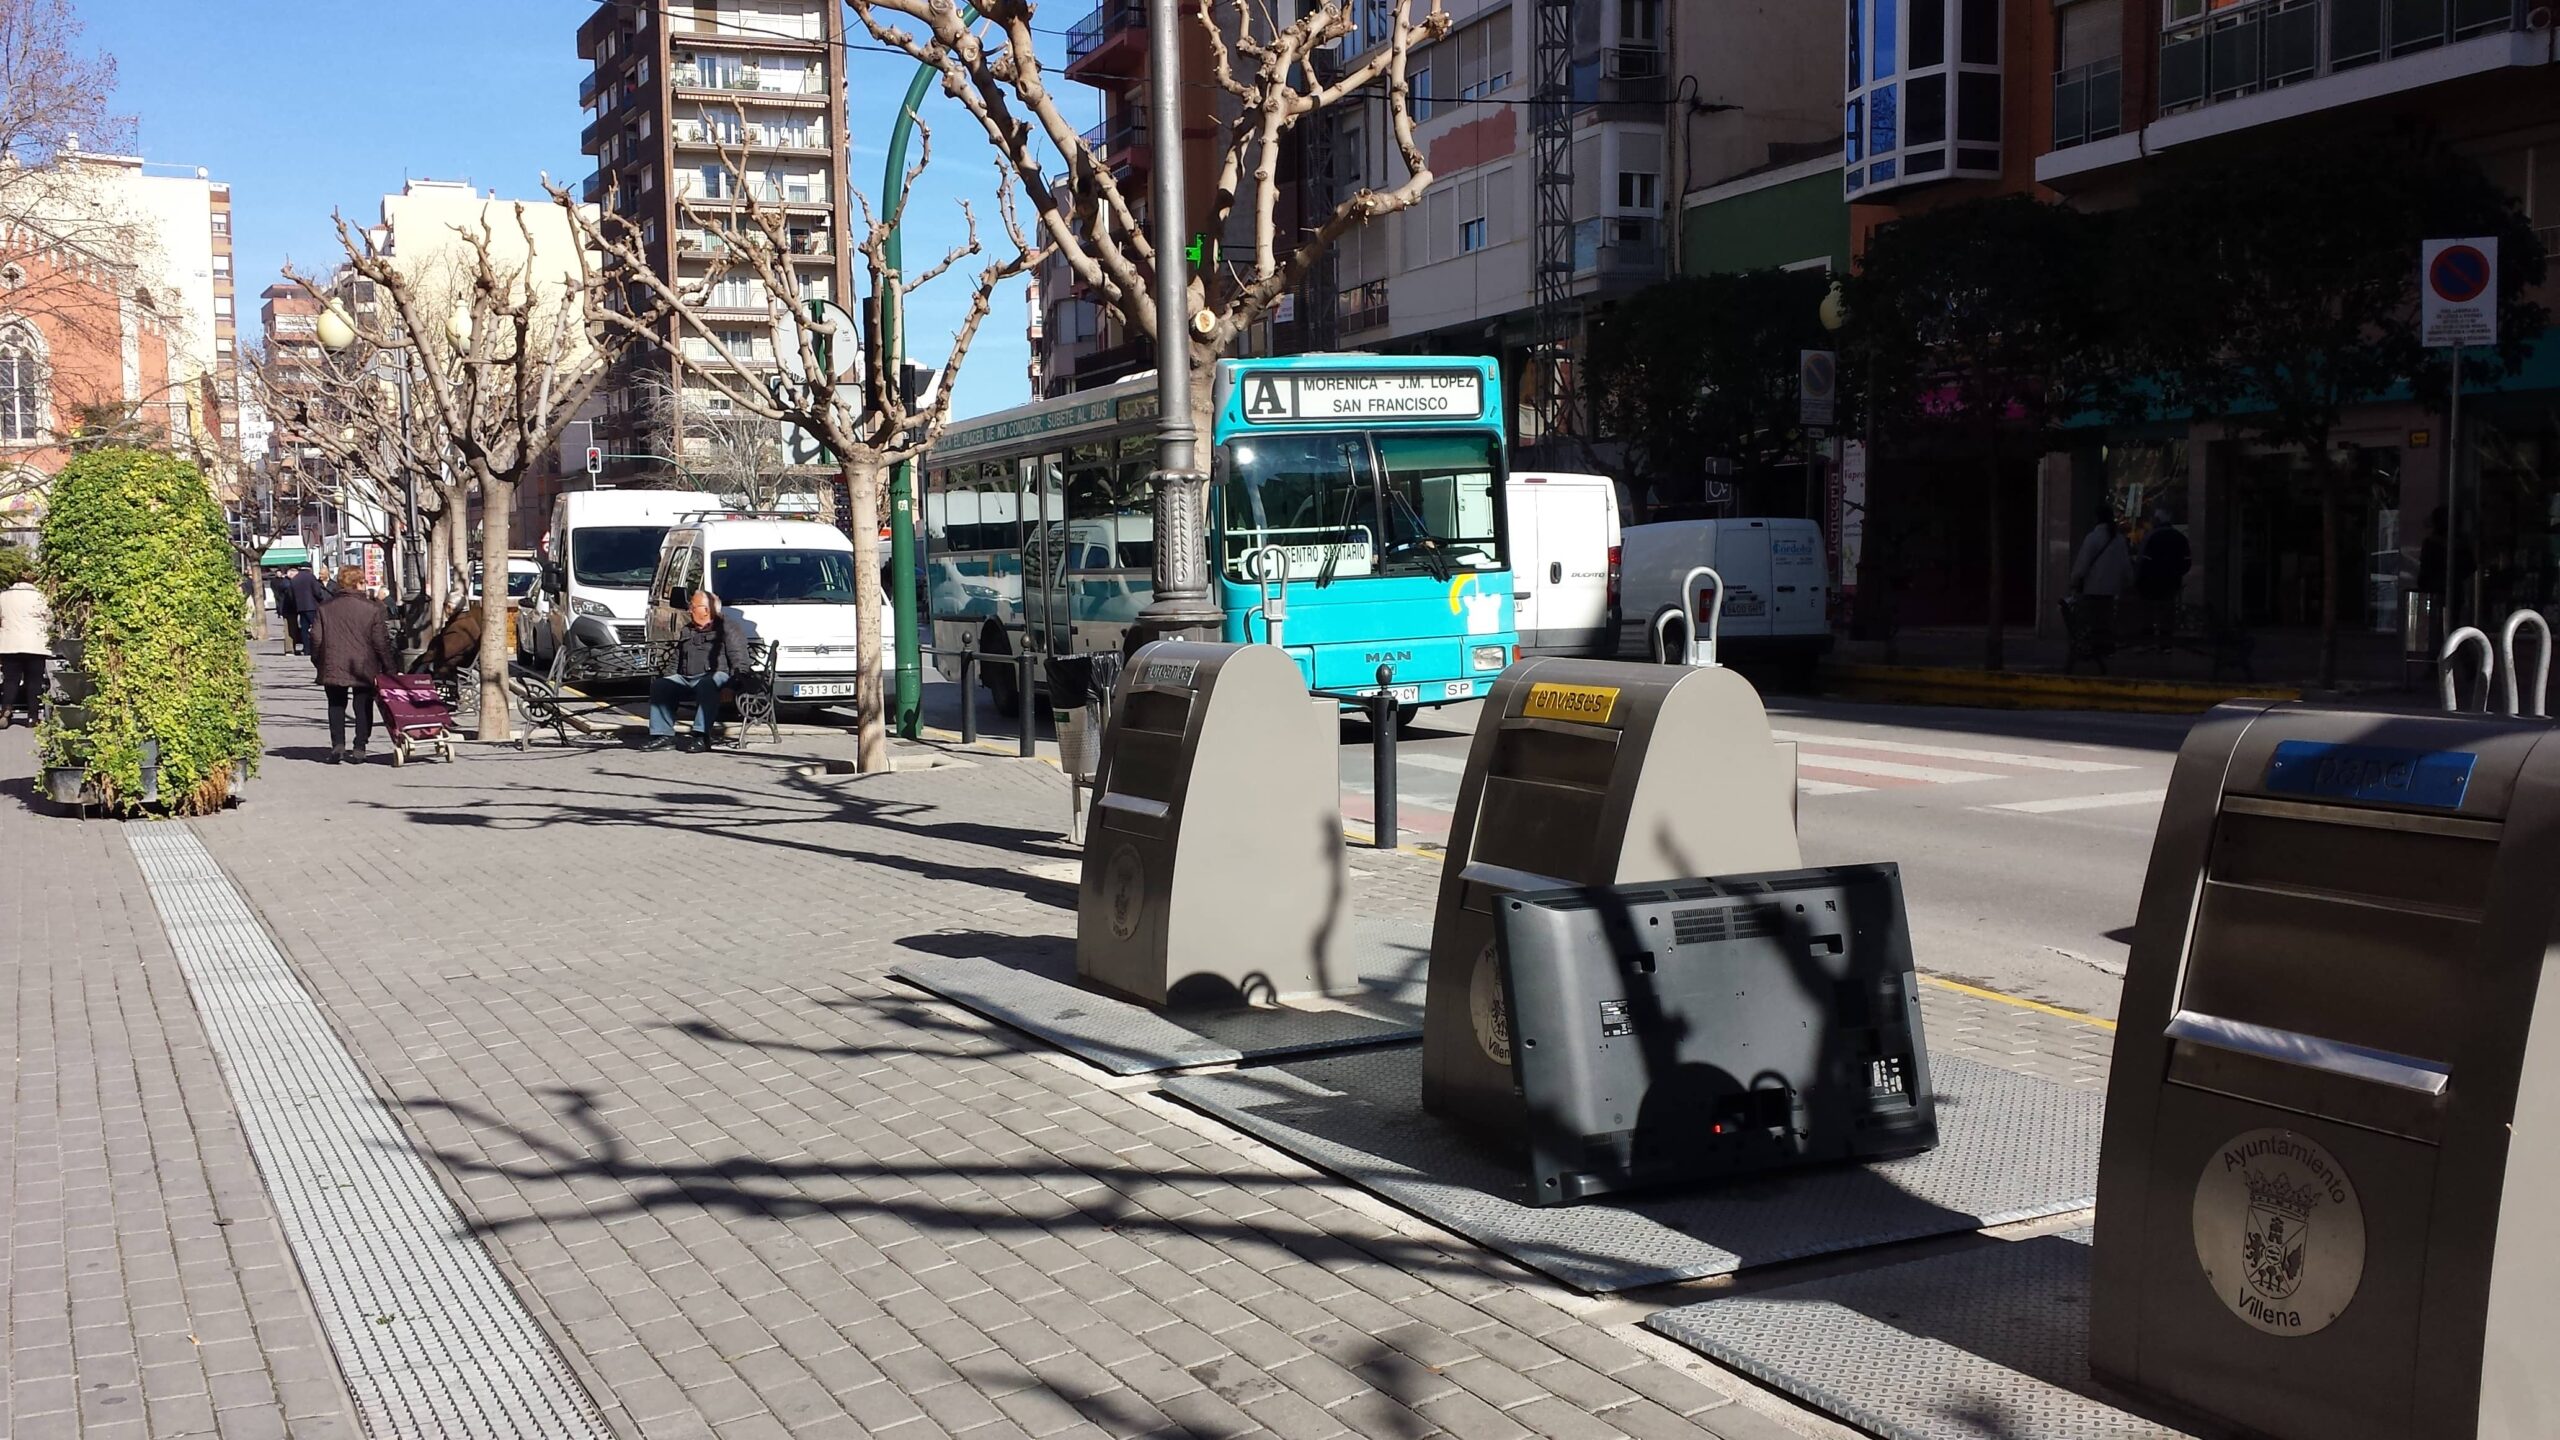 La adjudicataria del servicio de basura en Villena prolongará la actividad al menos un mes